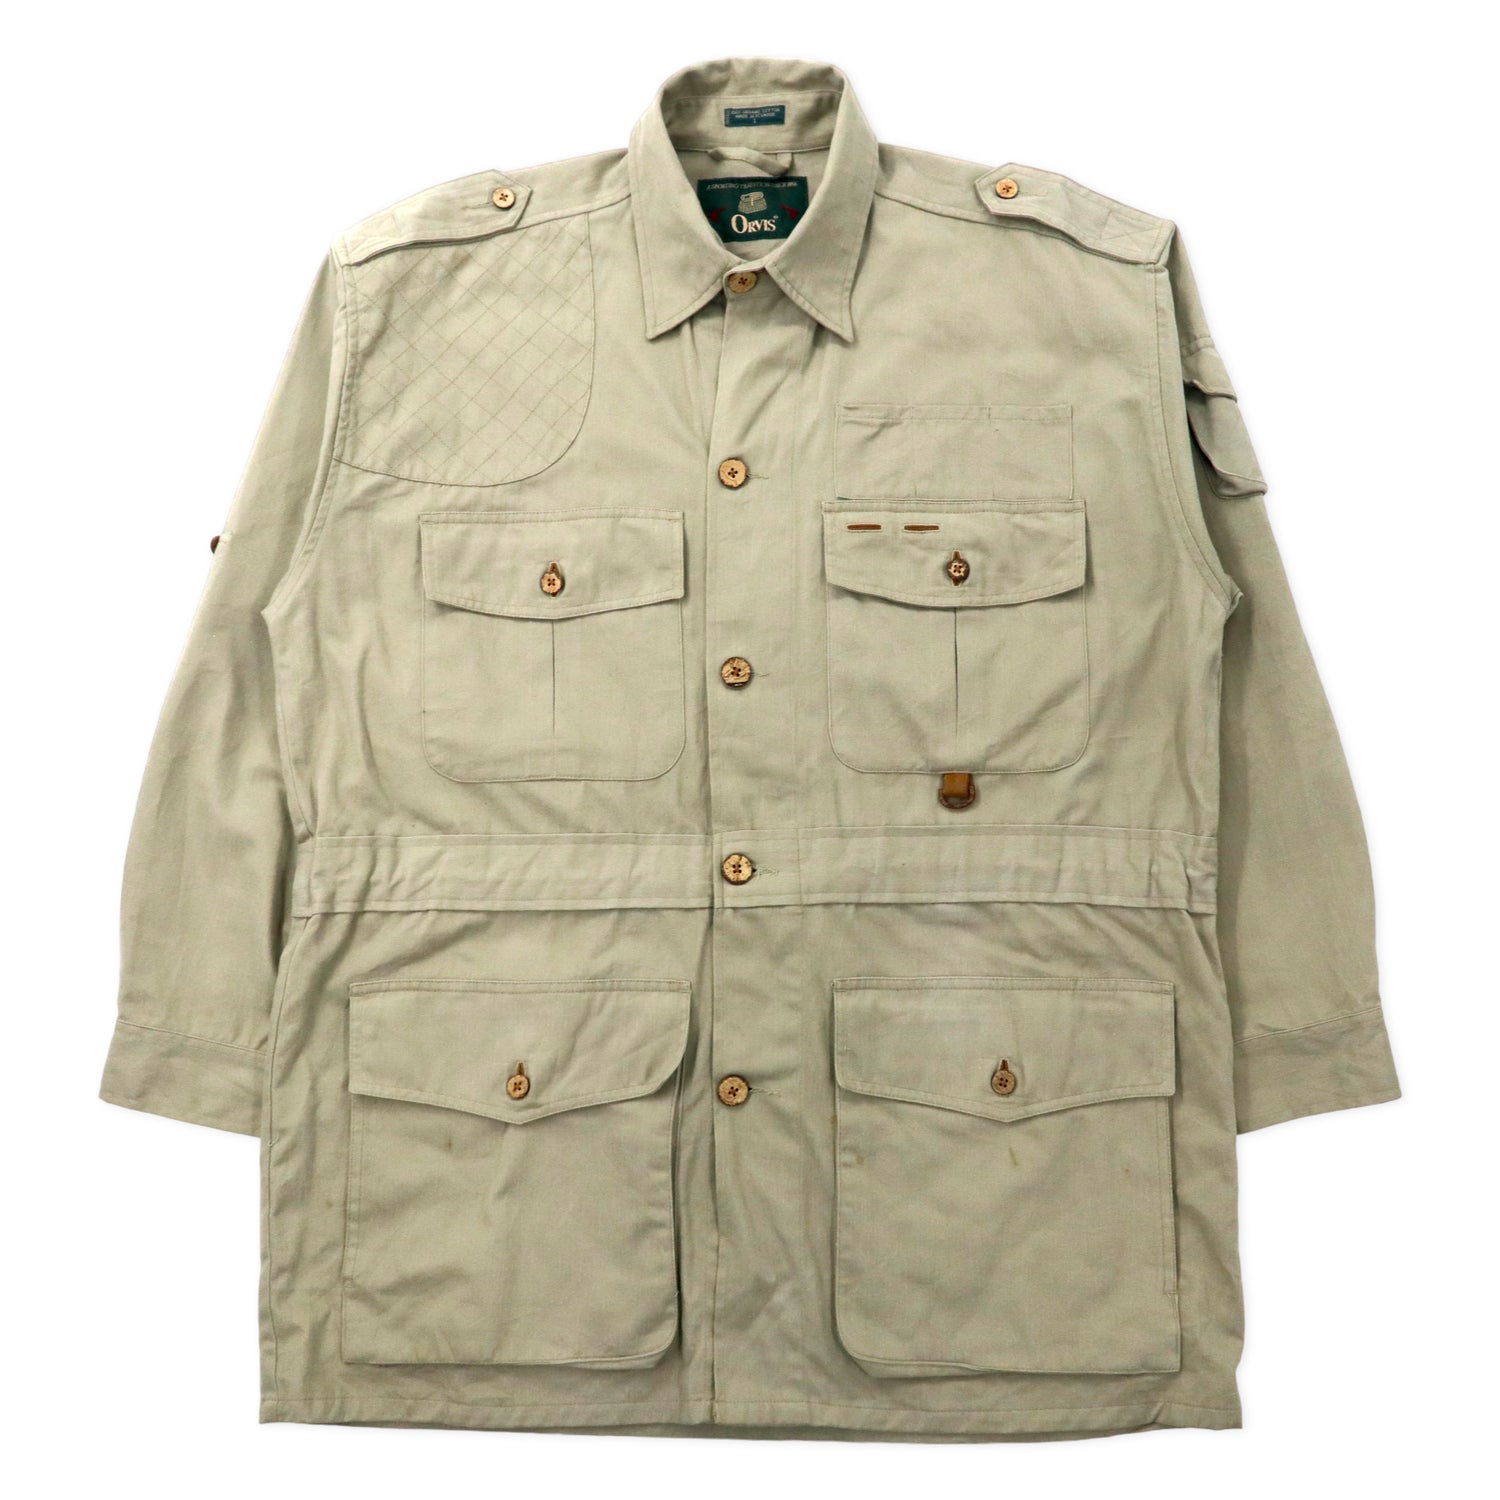 Orvis Safari jacket　Size L